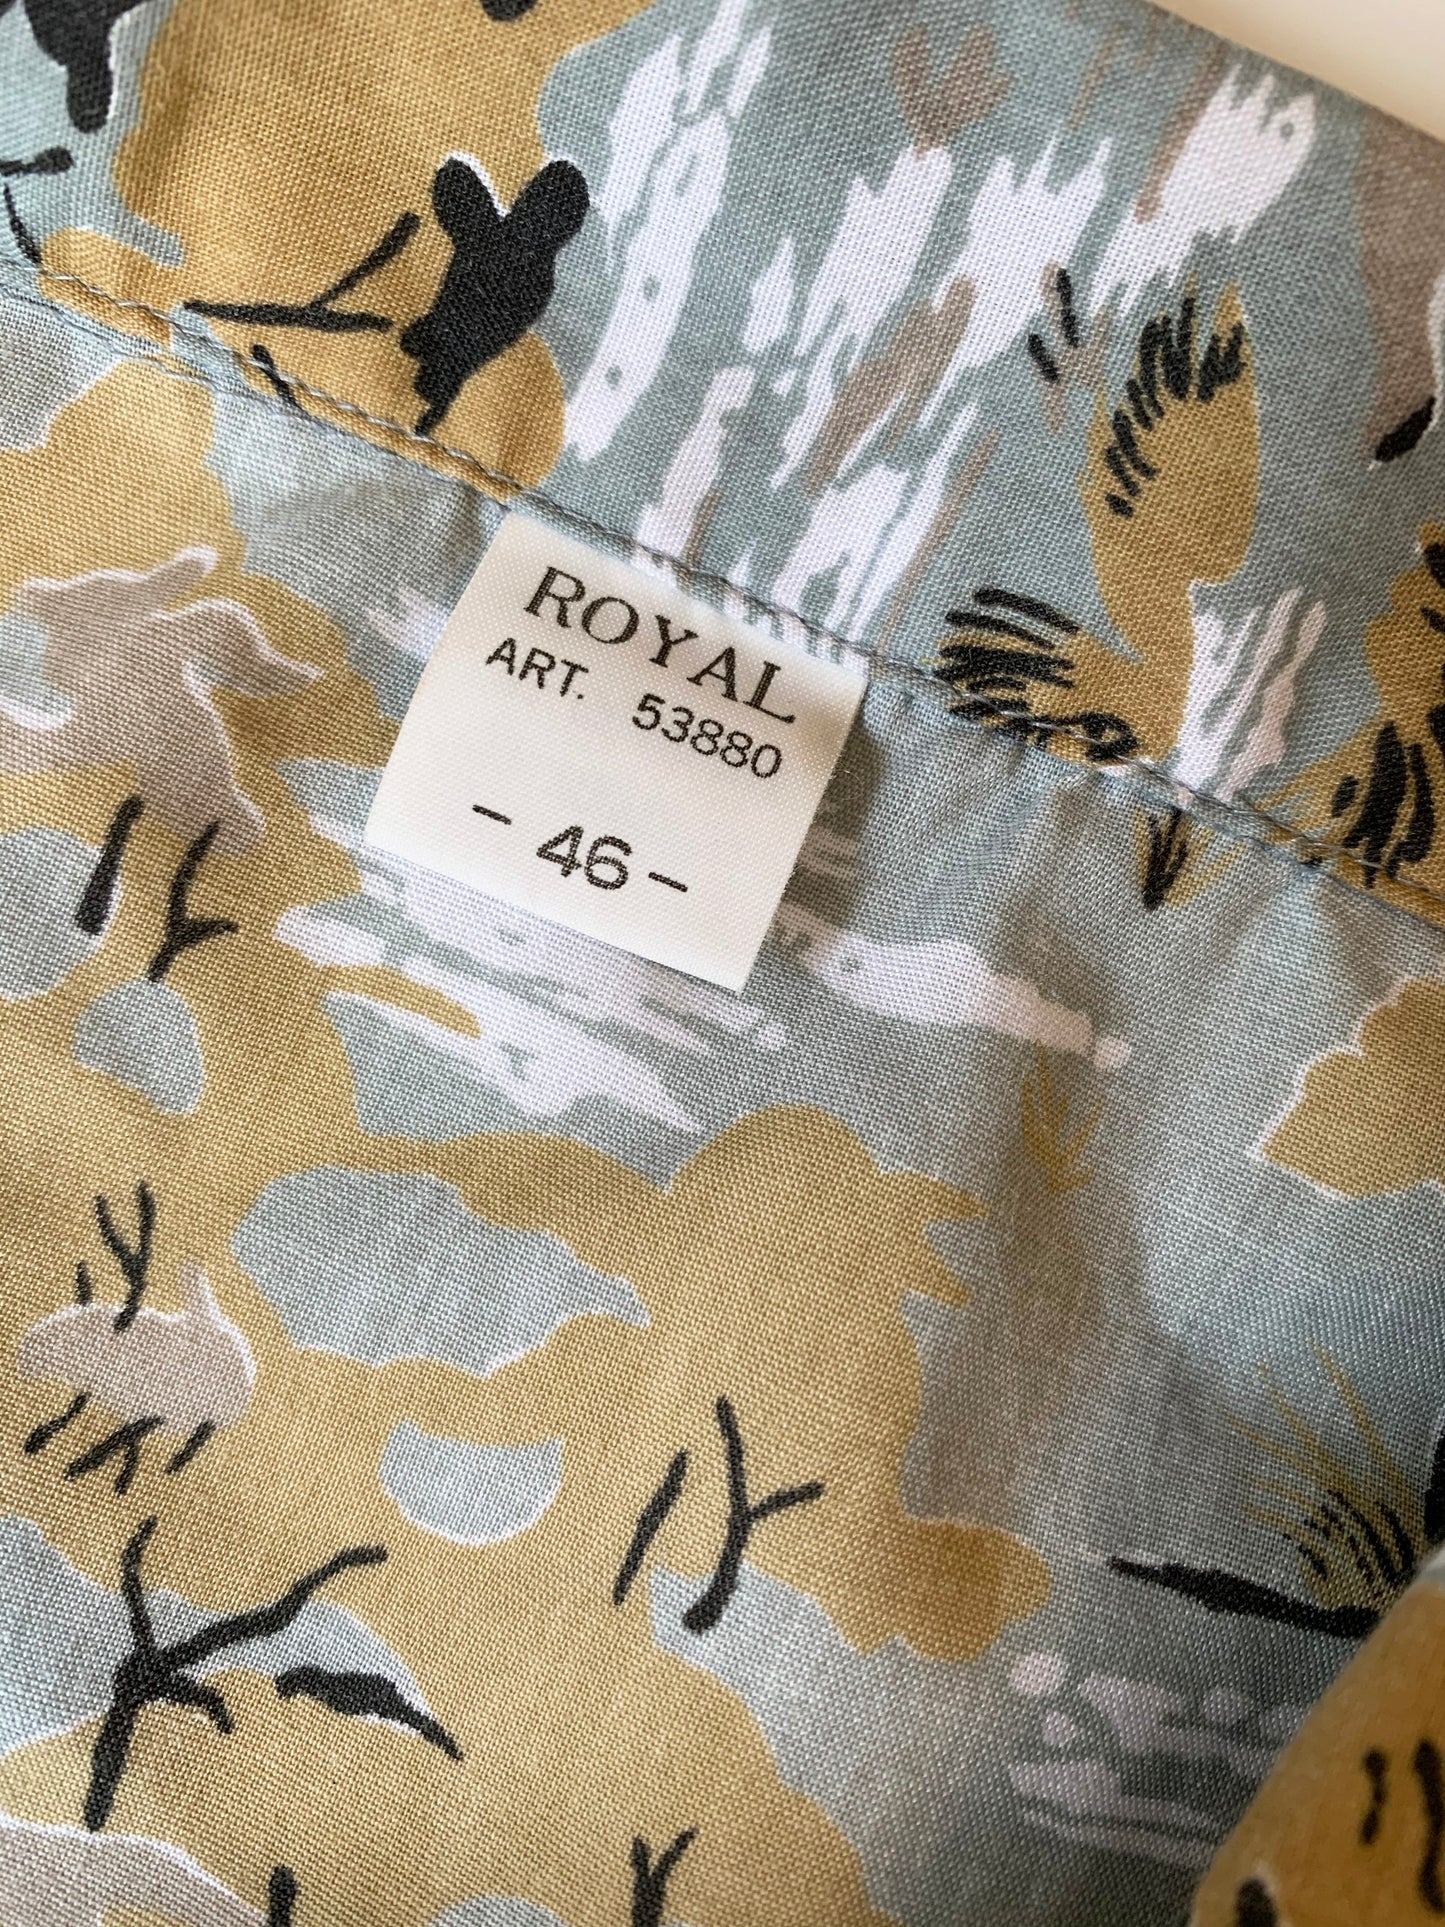 【EURO vintage】ROYAL animal Design shirt (men's S）